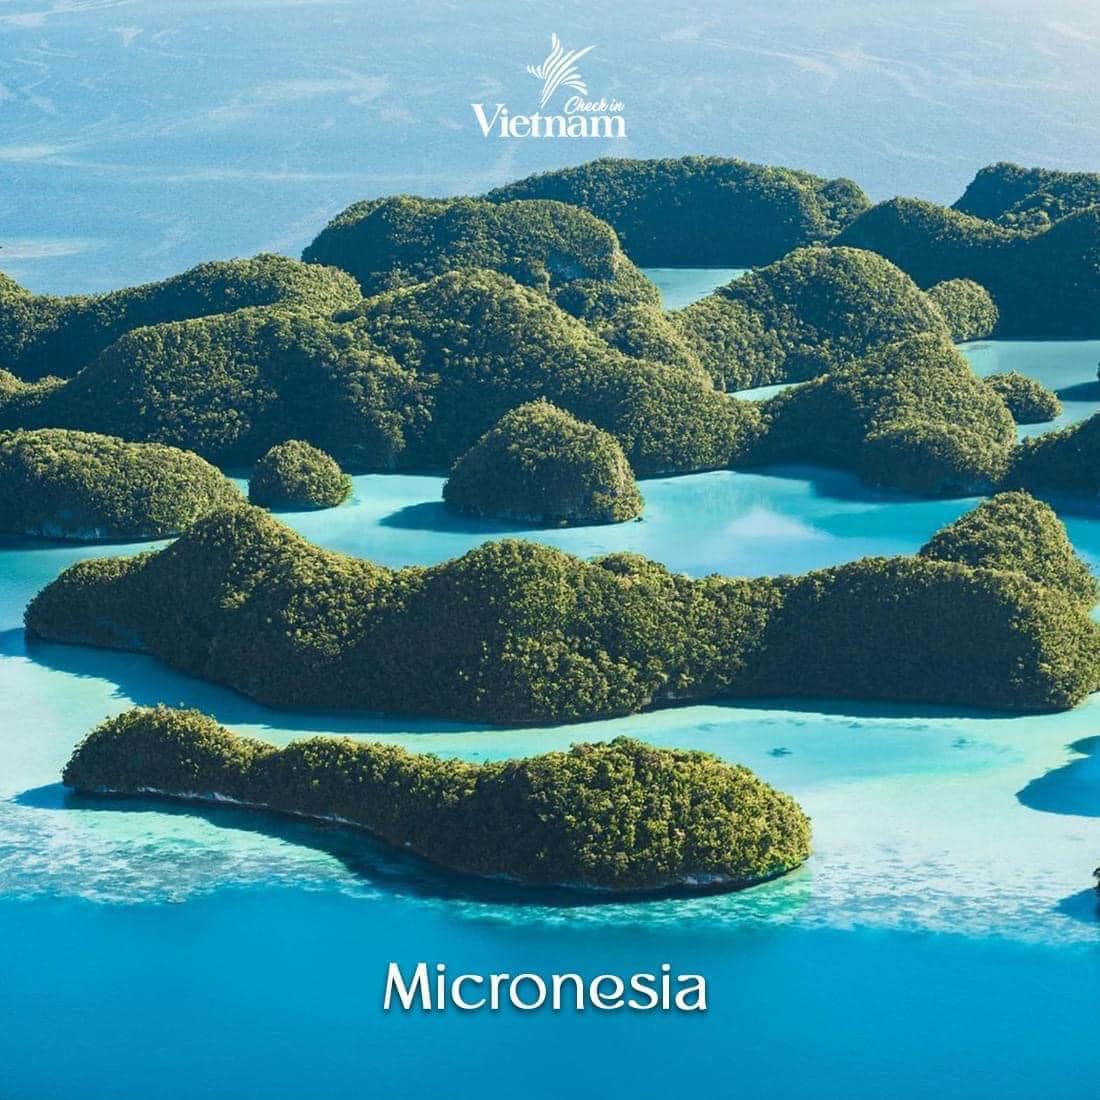 12. Micronesia